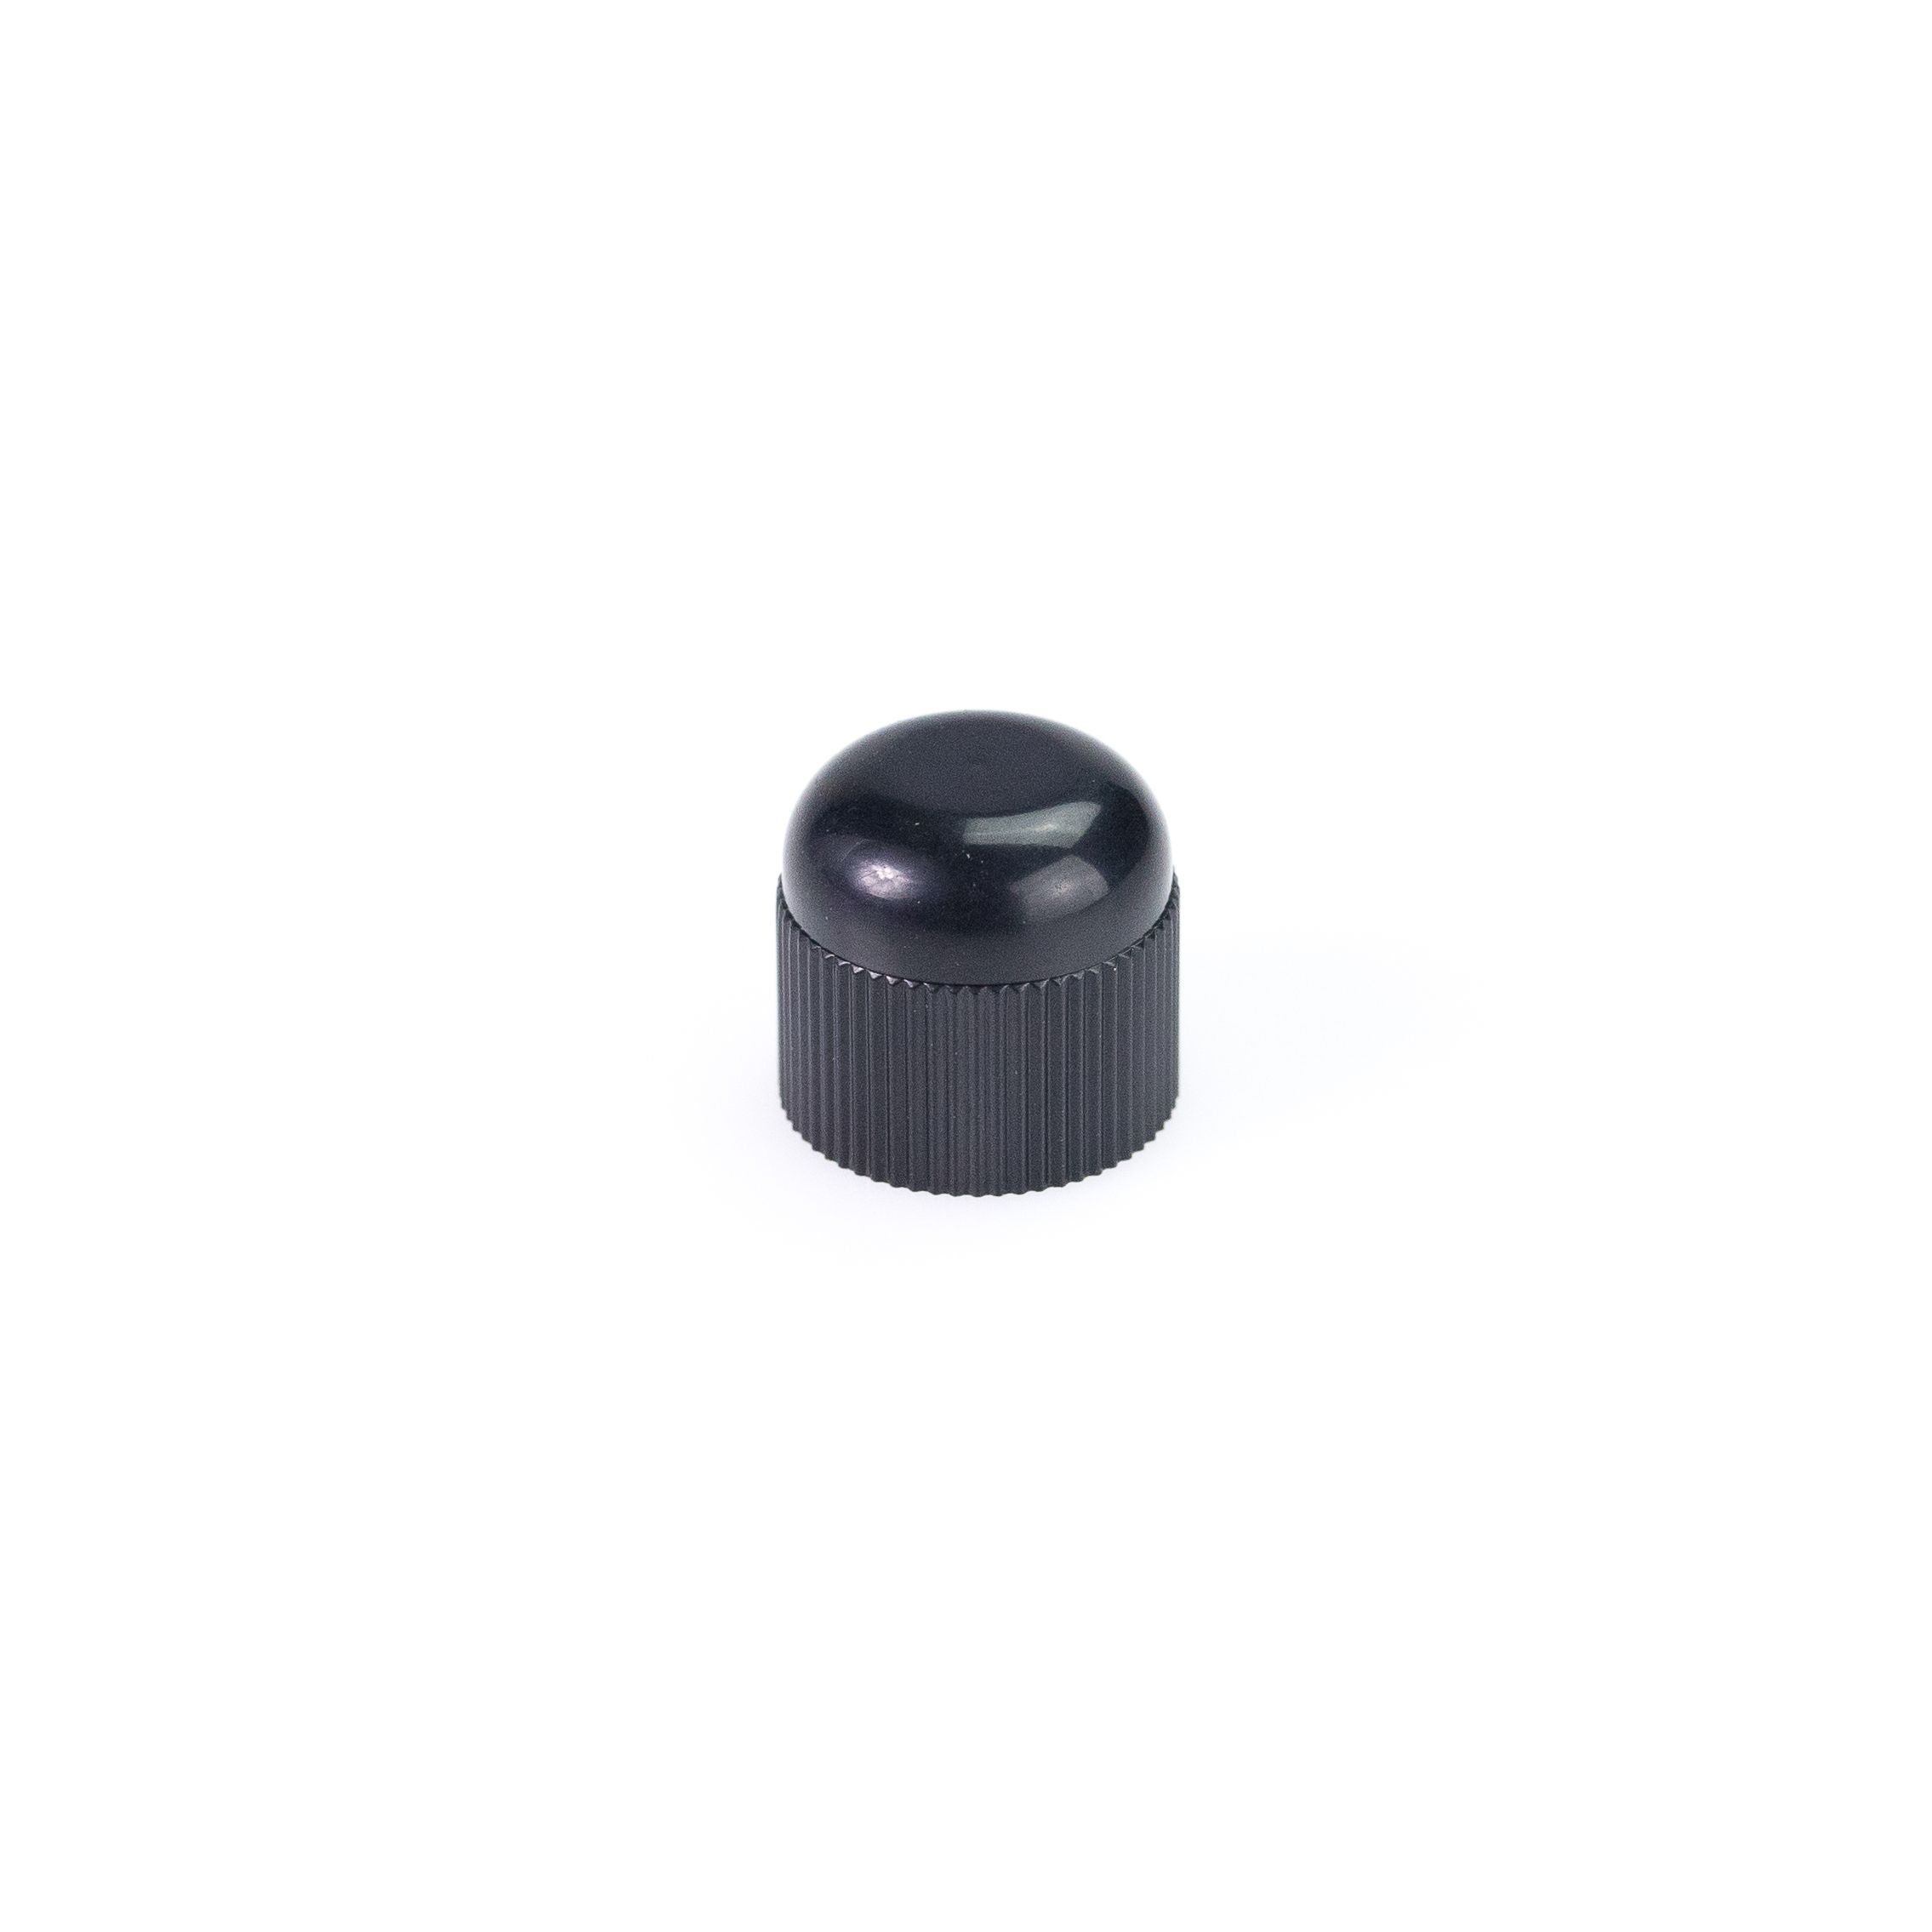 Obrázek produktu Valve cap KYB 120140000201 černý plastová